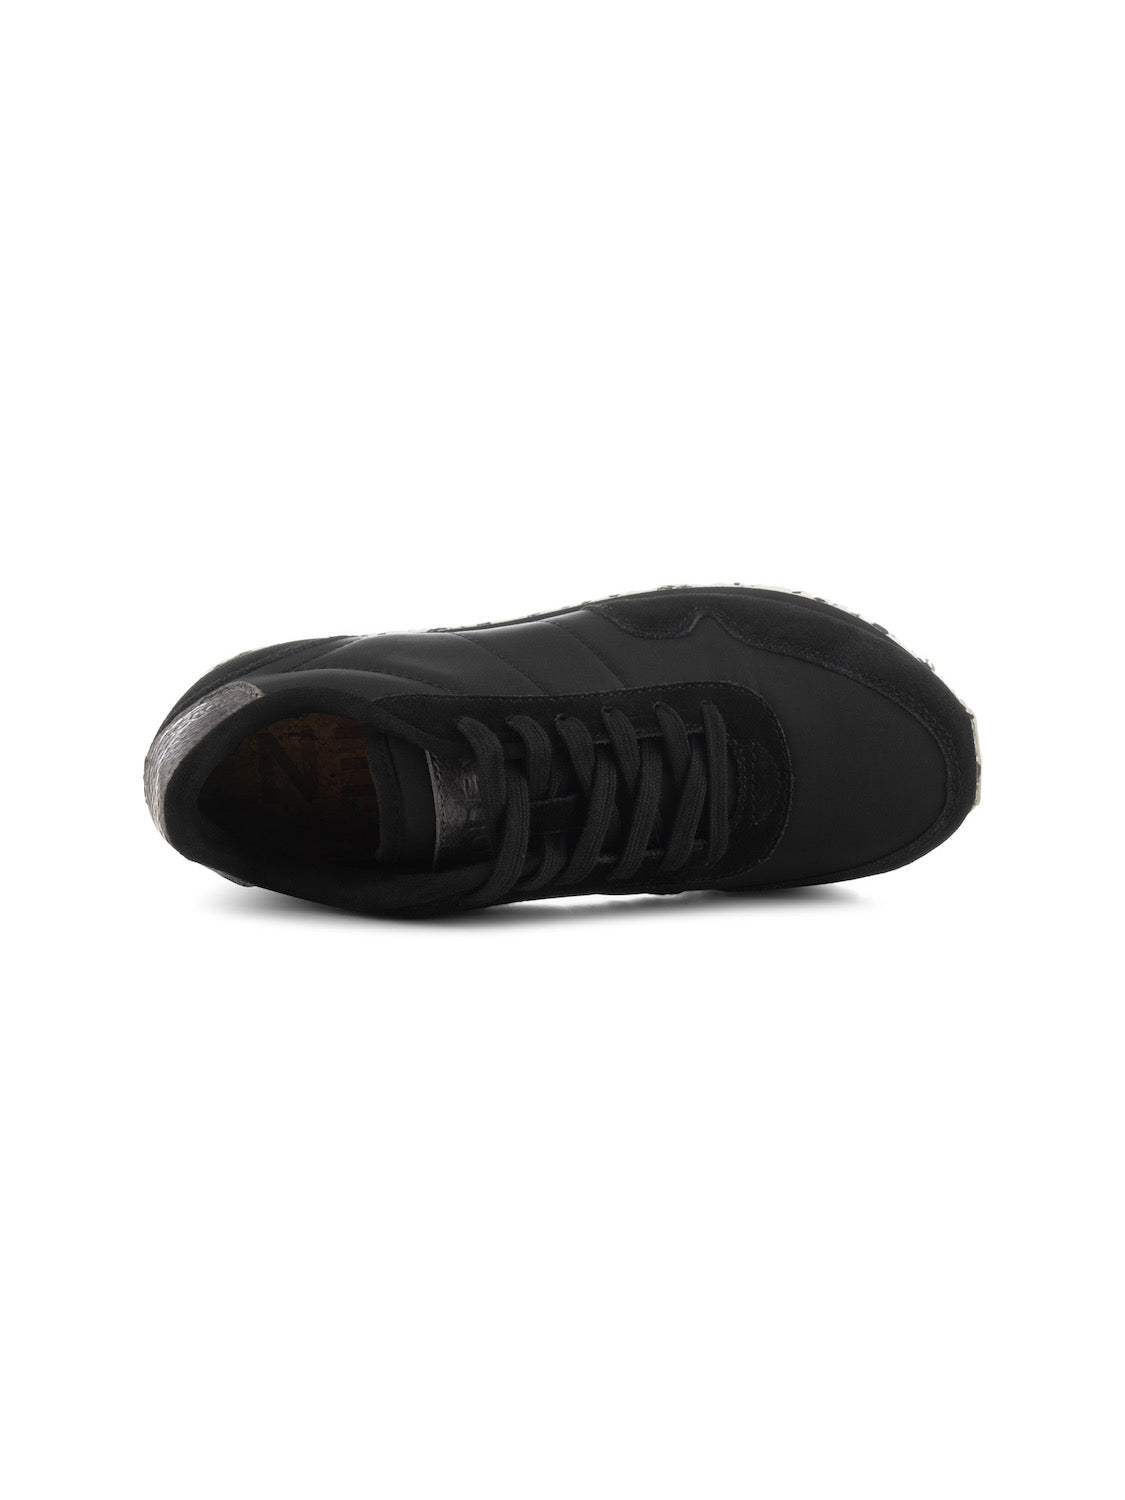 Woden | The Nora III Sneaker - Black